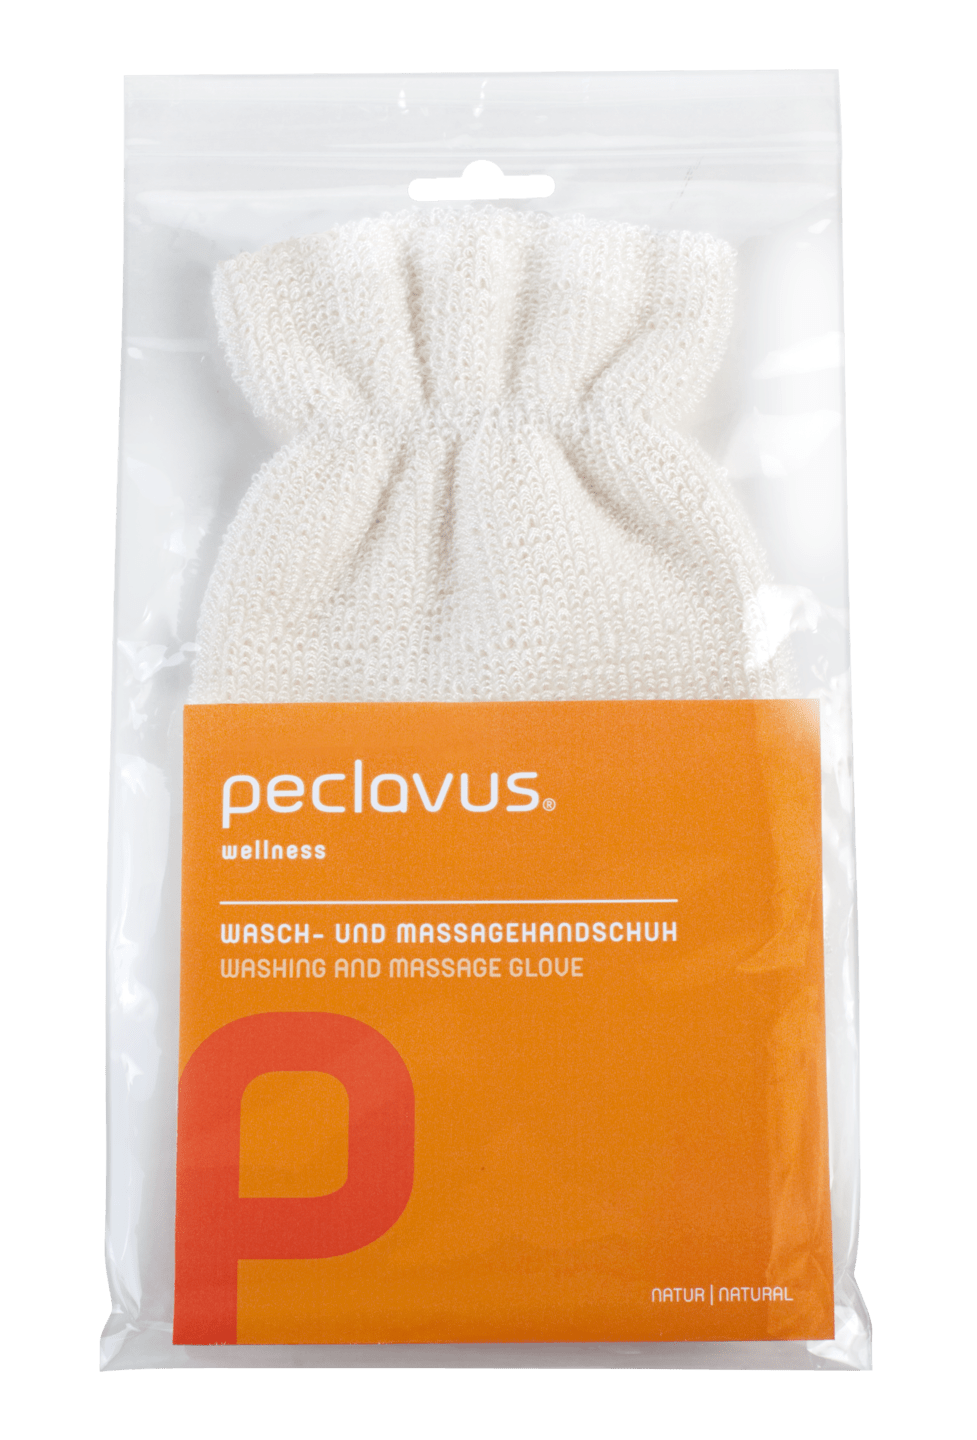 peclavus - Wasch- und Massagehandschuh